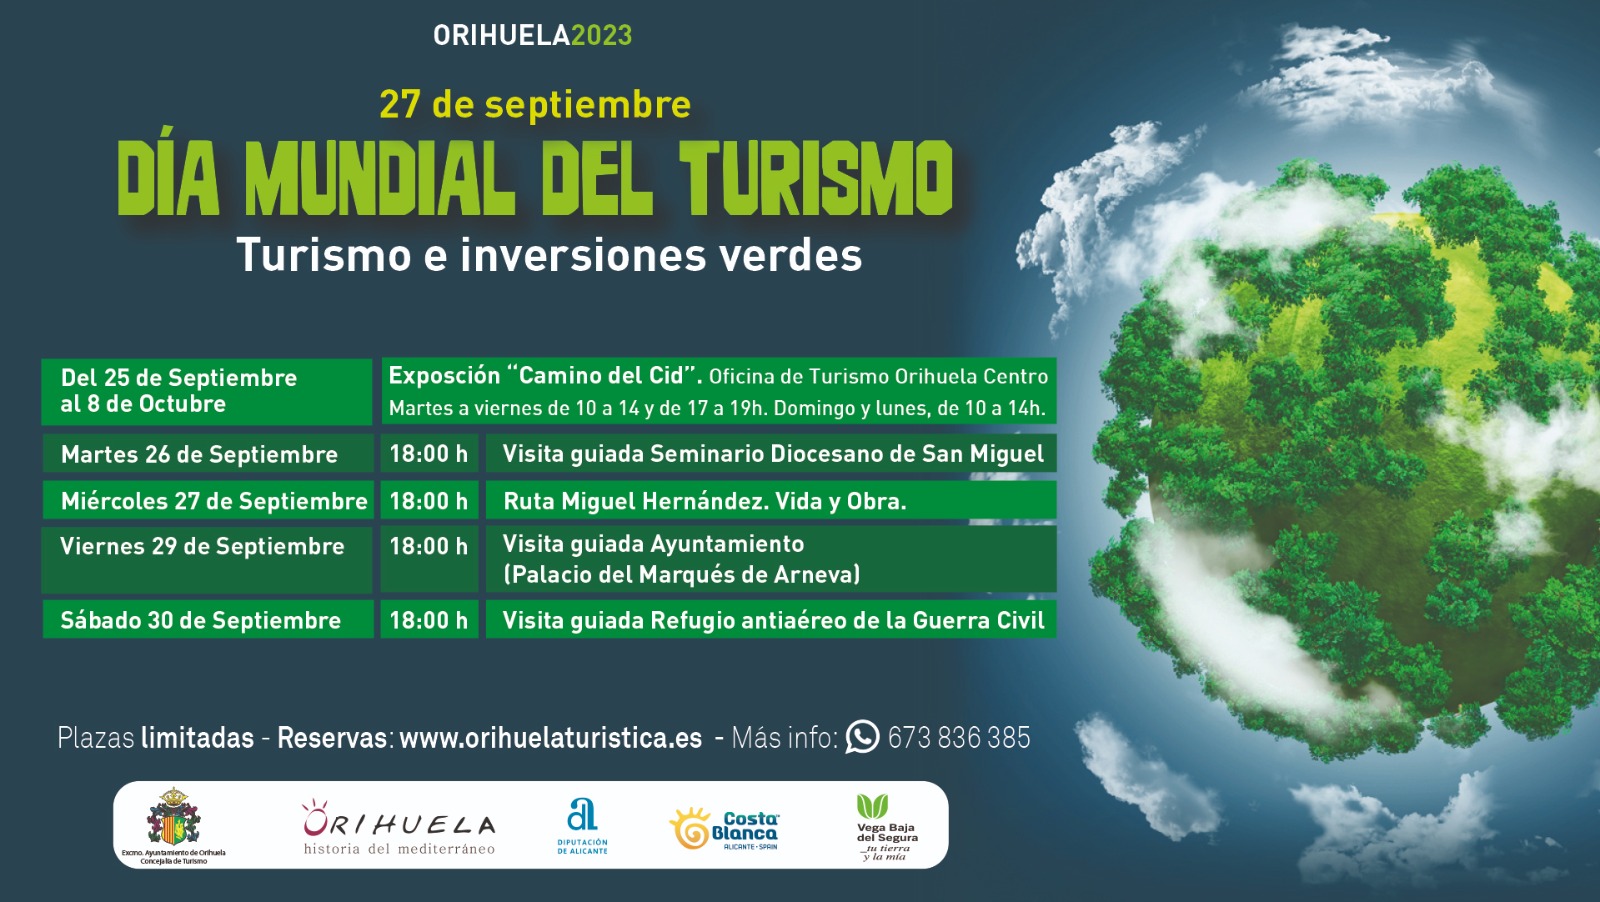 Orihuela apuesta por rutas y visitas especiales y novedosas para conmemorar el Día Mundial del Turismo